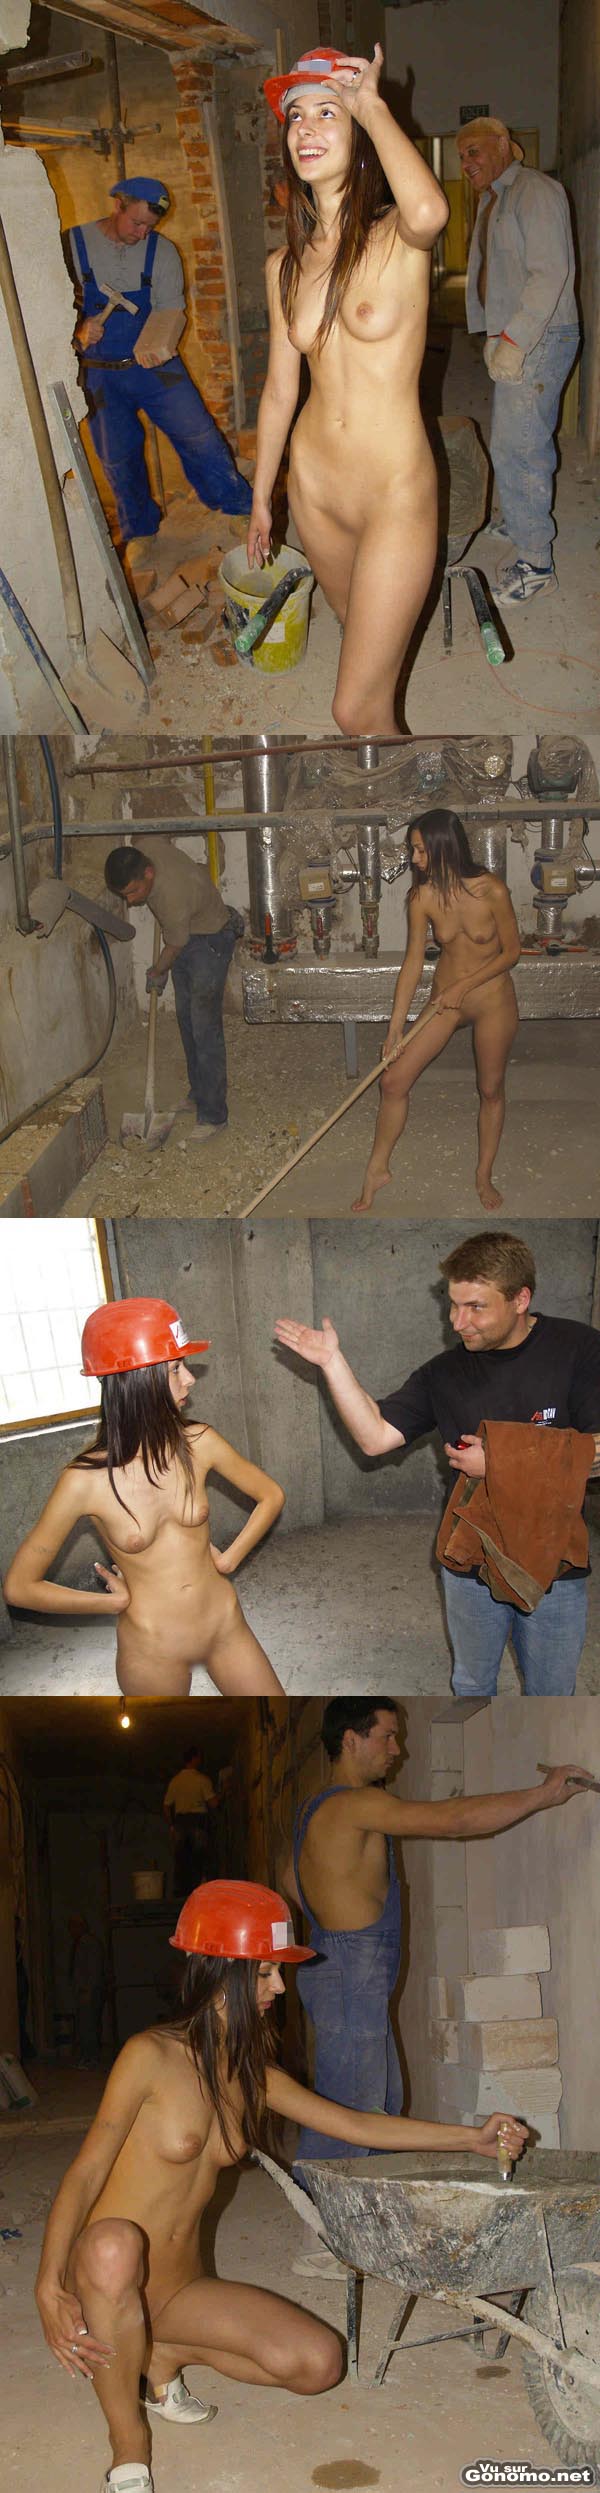 Ouvriere nue : voila l ouvriere du jour qui se balade et fait des travaux nue sur un chantier